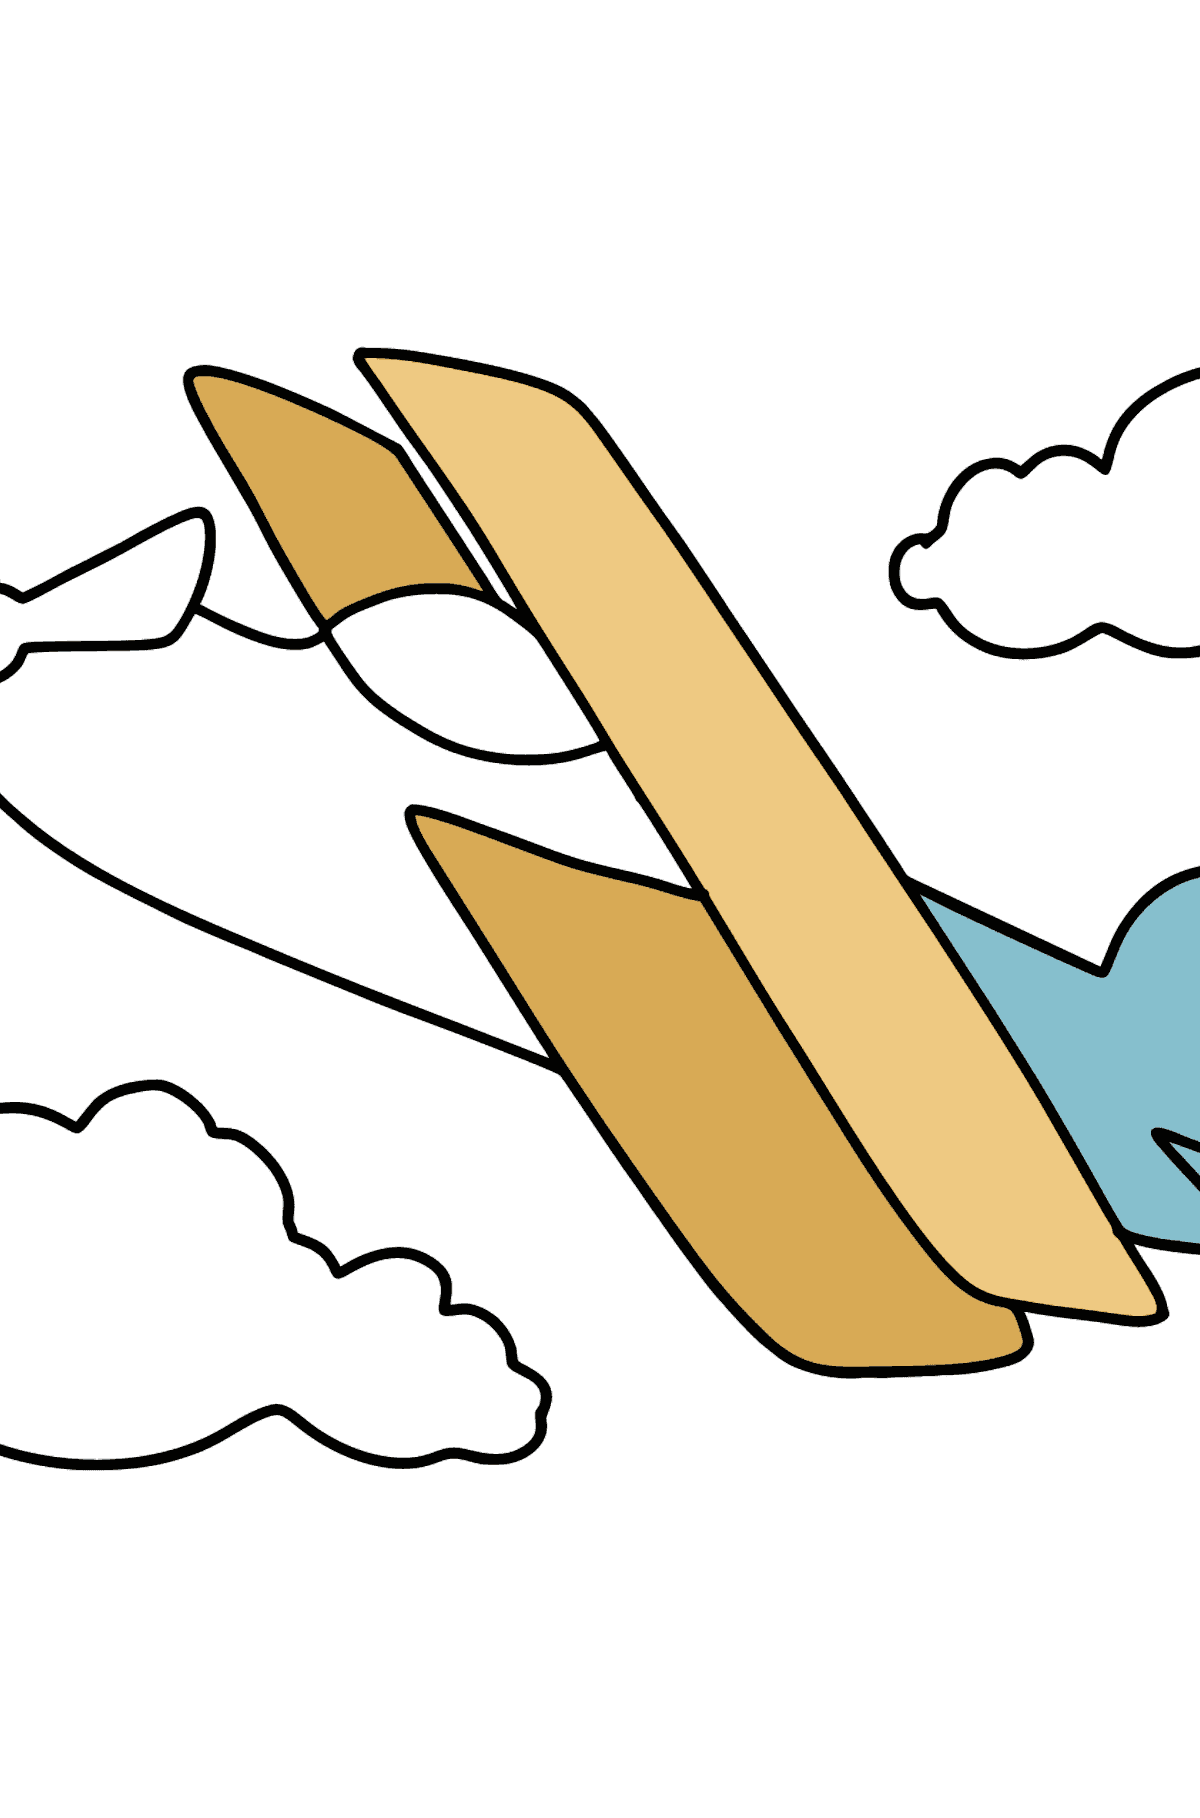 Dibujo de Avión simple para colorear - Dibujos para Colorear para Niños